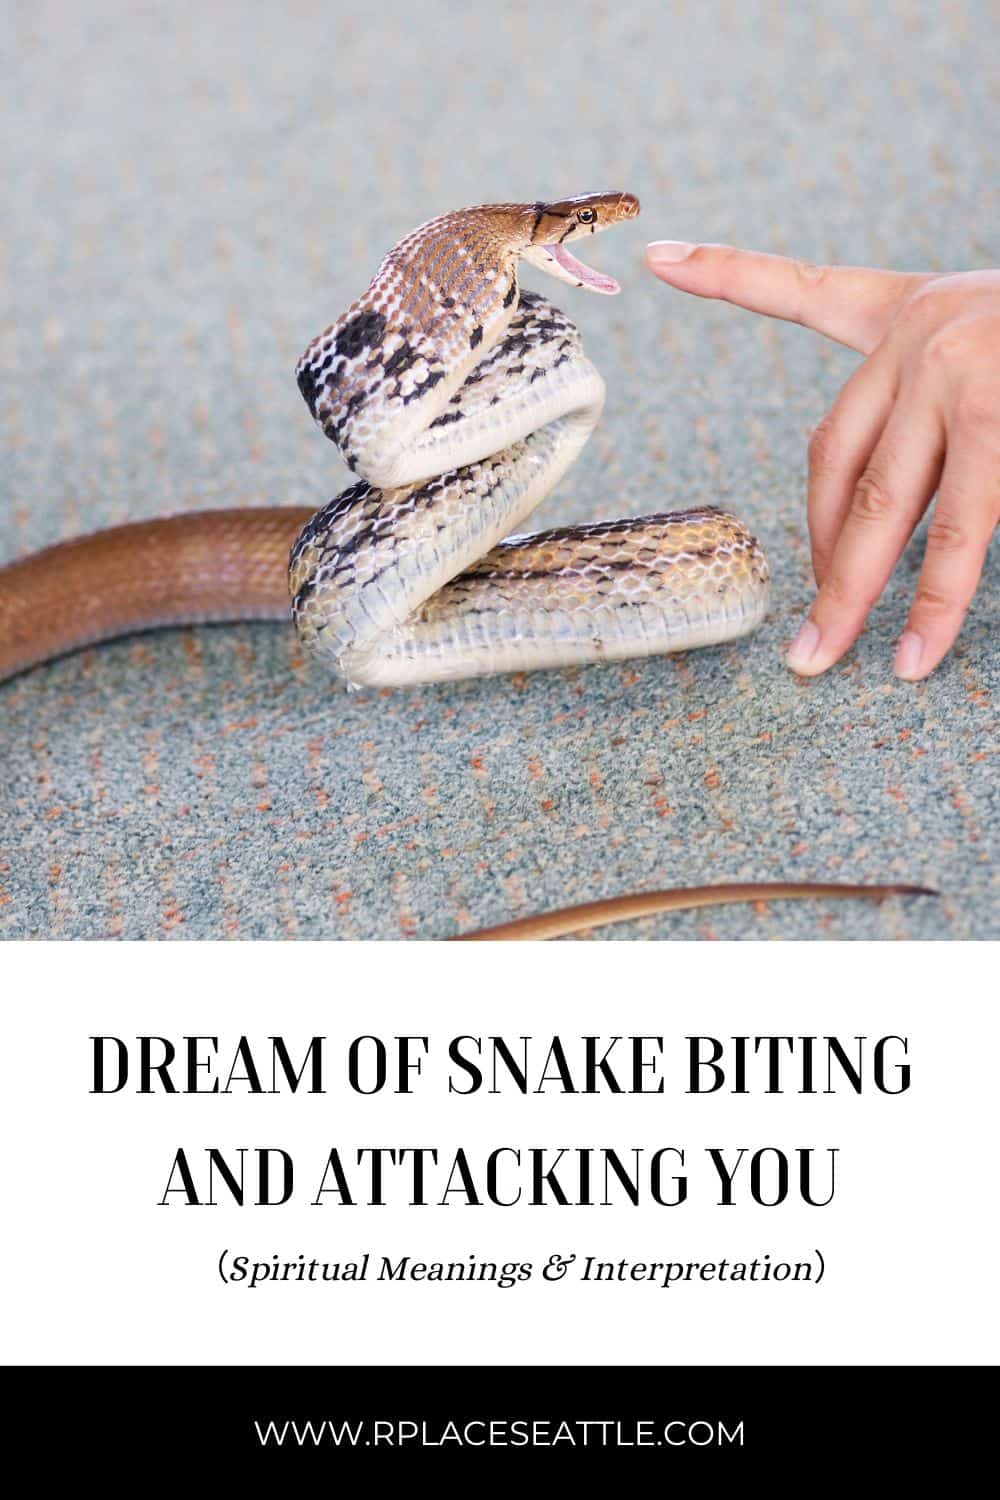  7 Sapnų apie gyvatės įkandimus aiškinimas